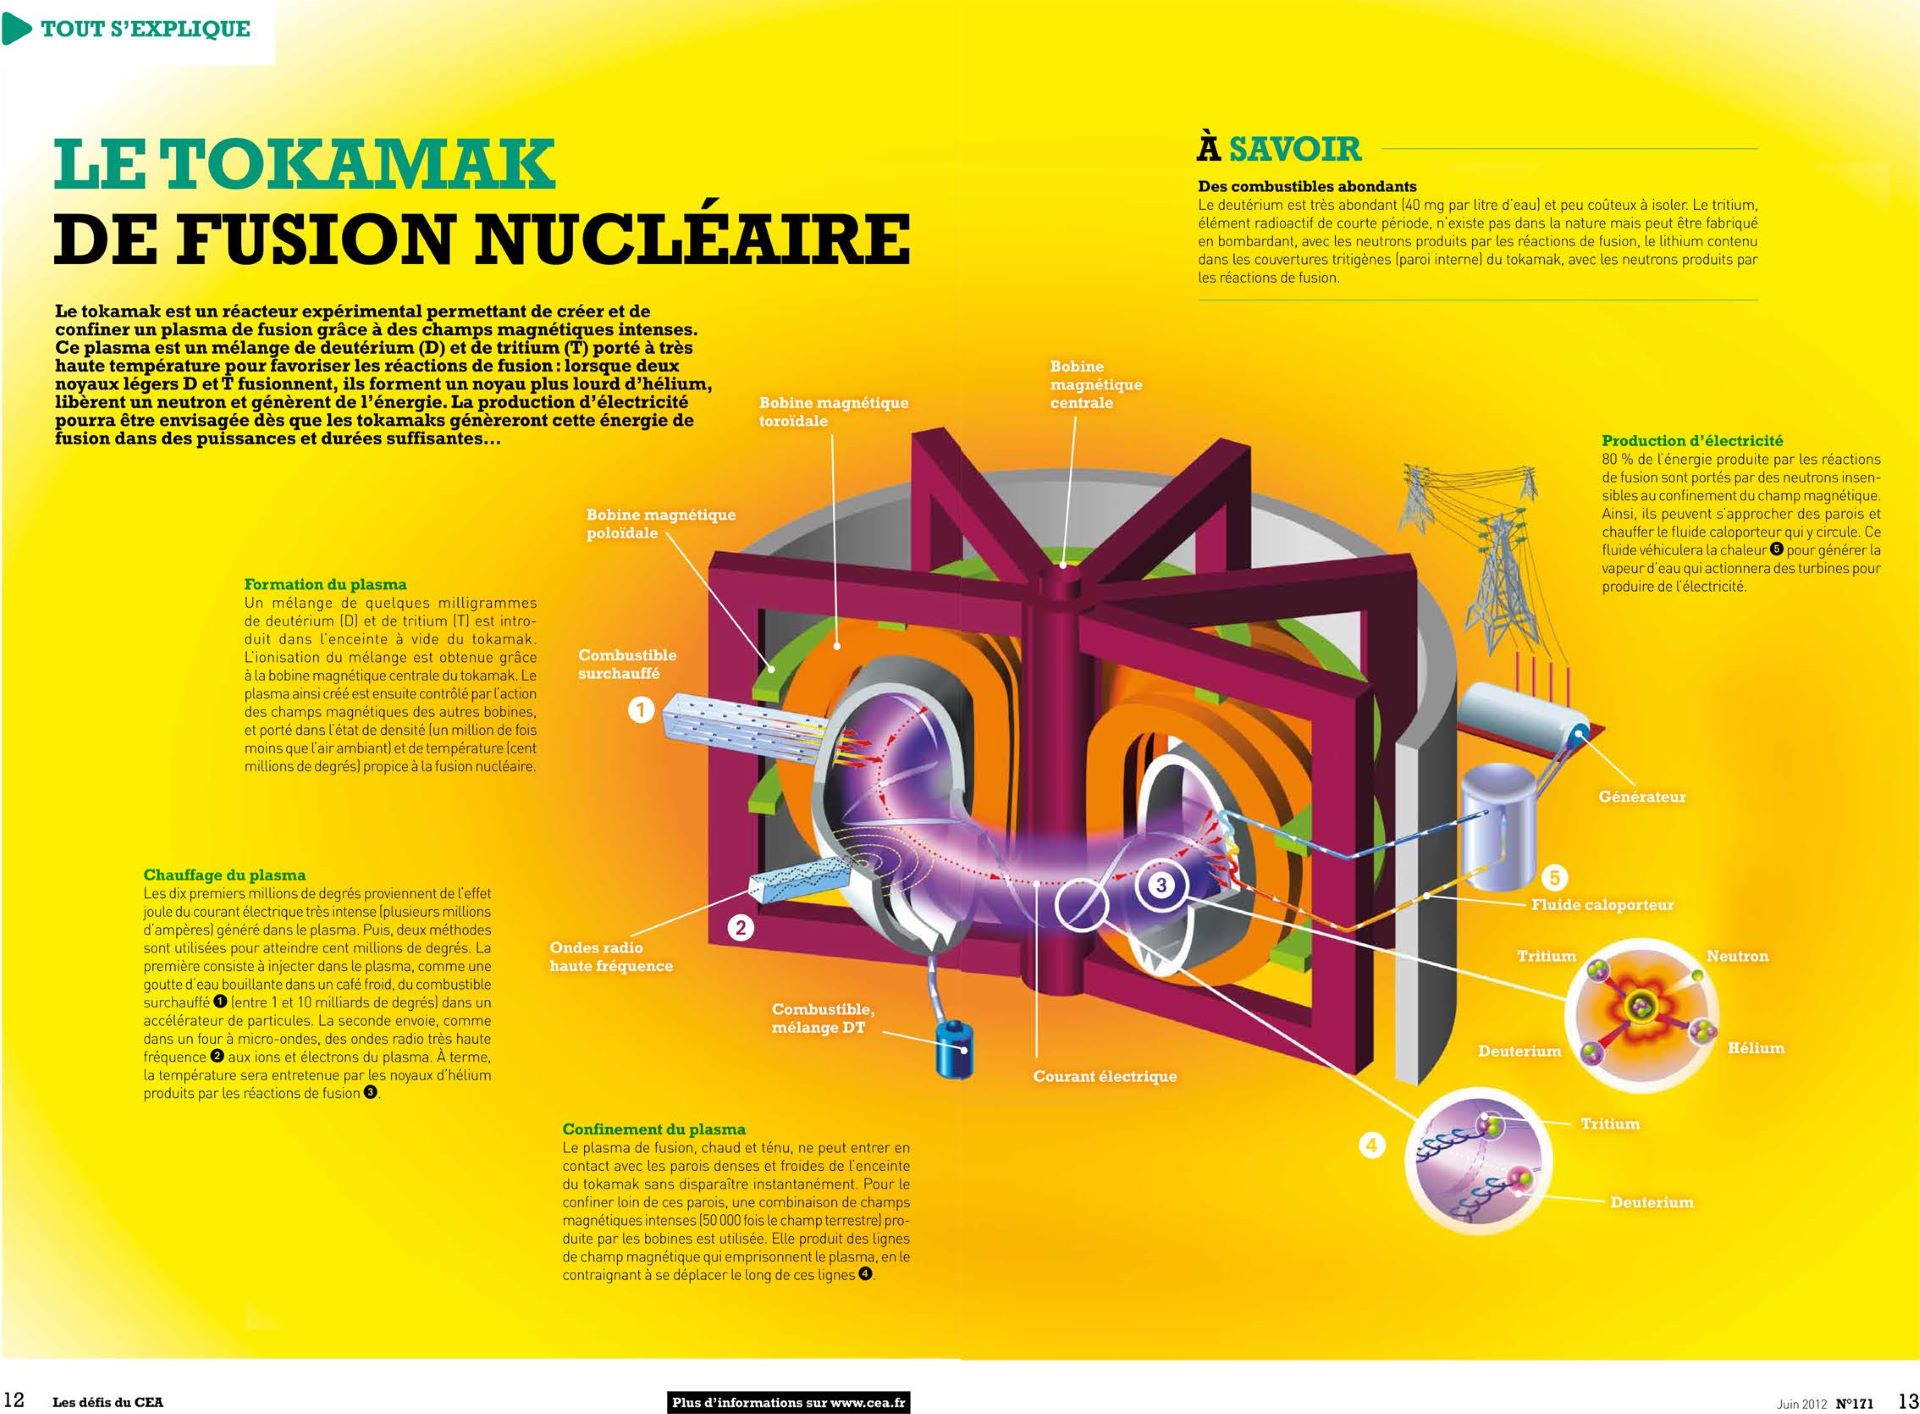 Infographie sur le tokamak de fusion nucléaire